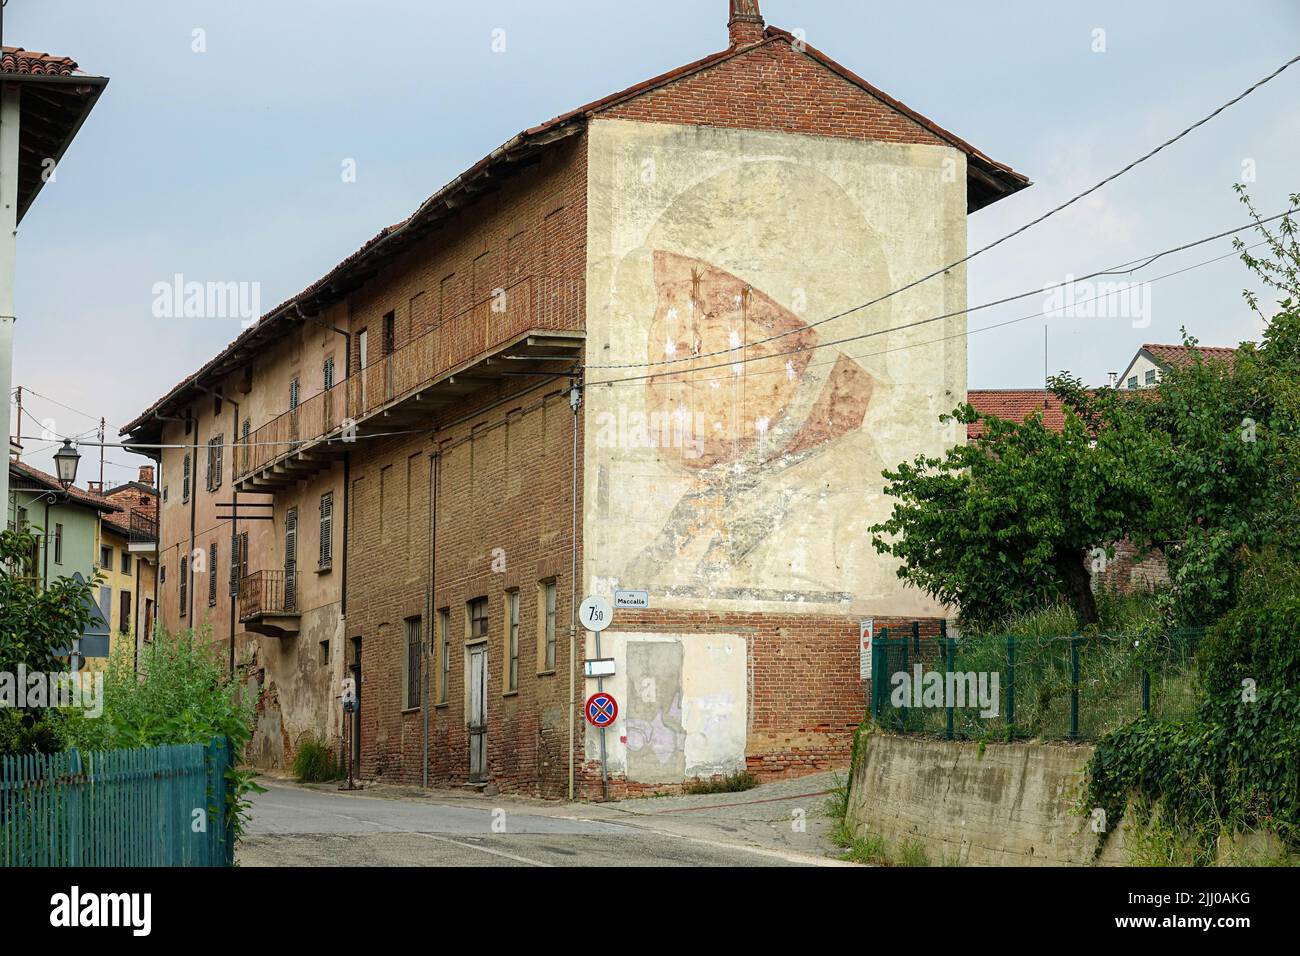 Portrait géant de Benito Mussolini fait en 1936 encore visible sur la façade latérale d'un bâtiment. Montà d'Alba, Italie - juillet 2022 Banque D'Images